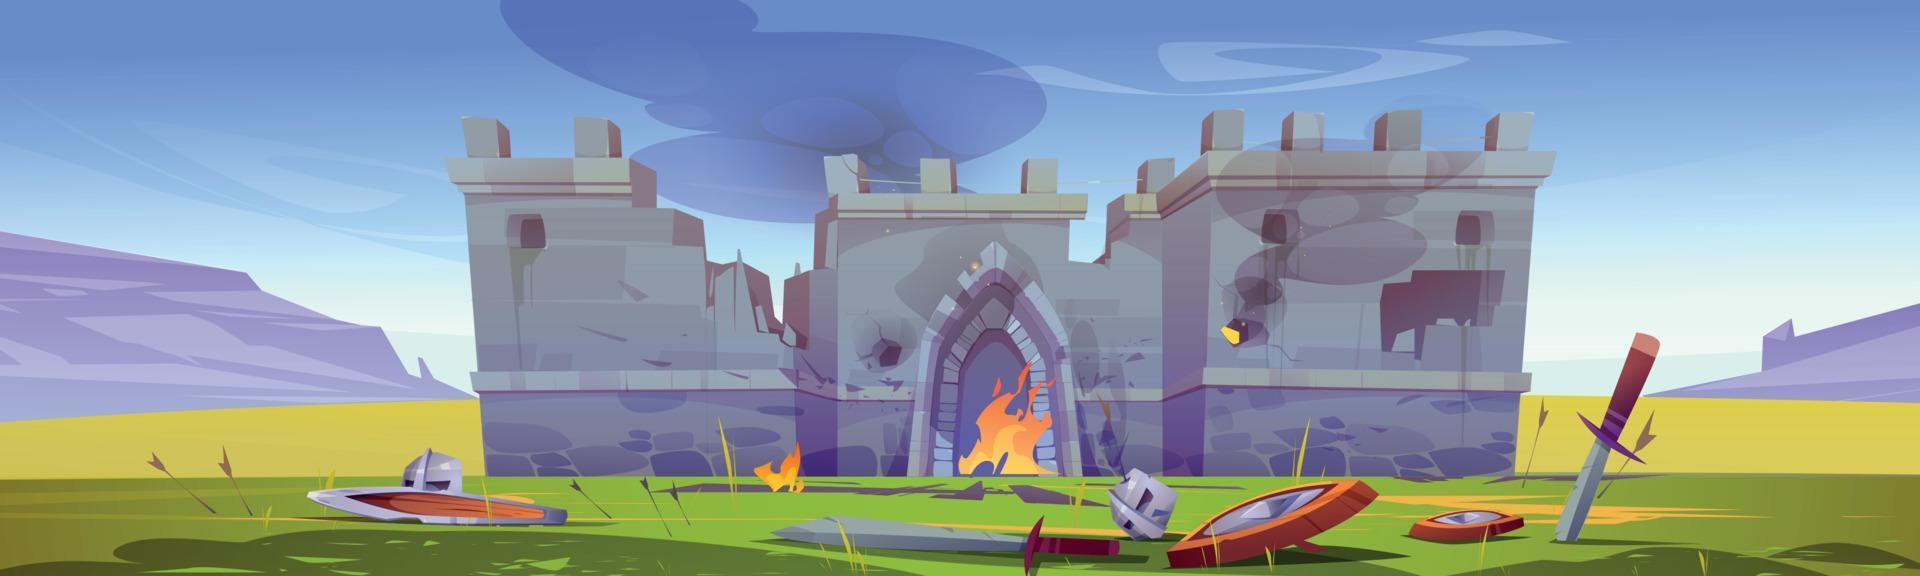 campo de batalla con el antiguo castillo medieval en llamas vector